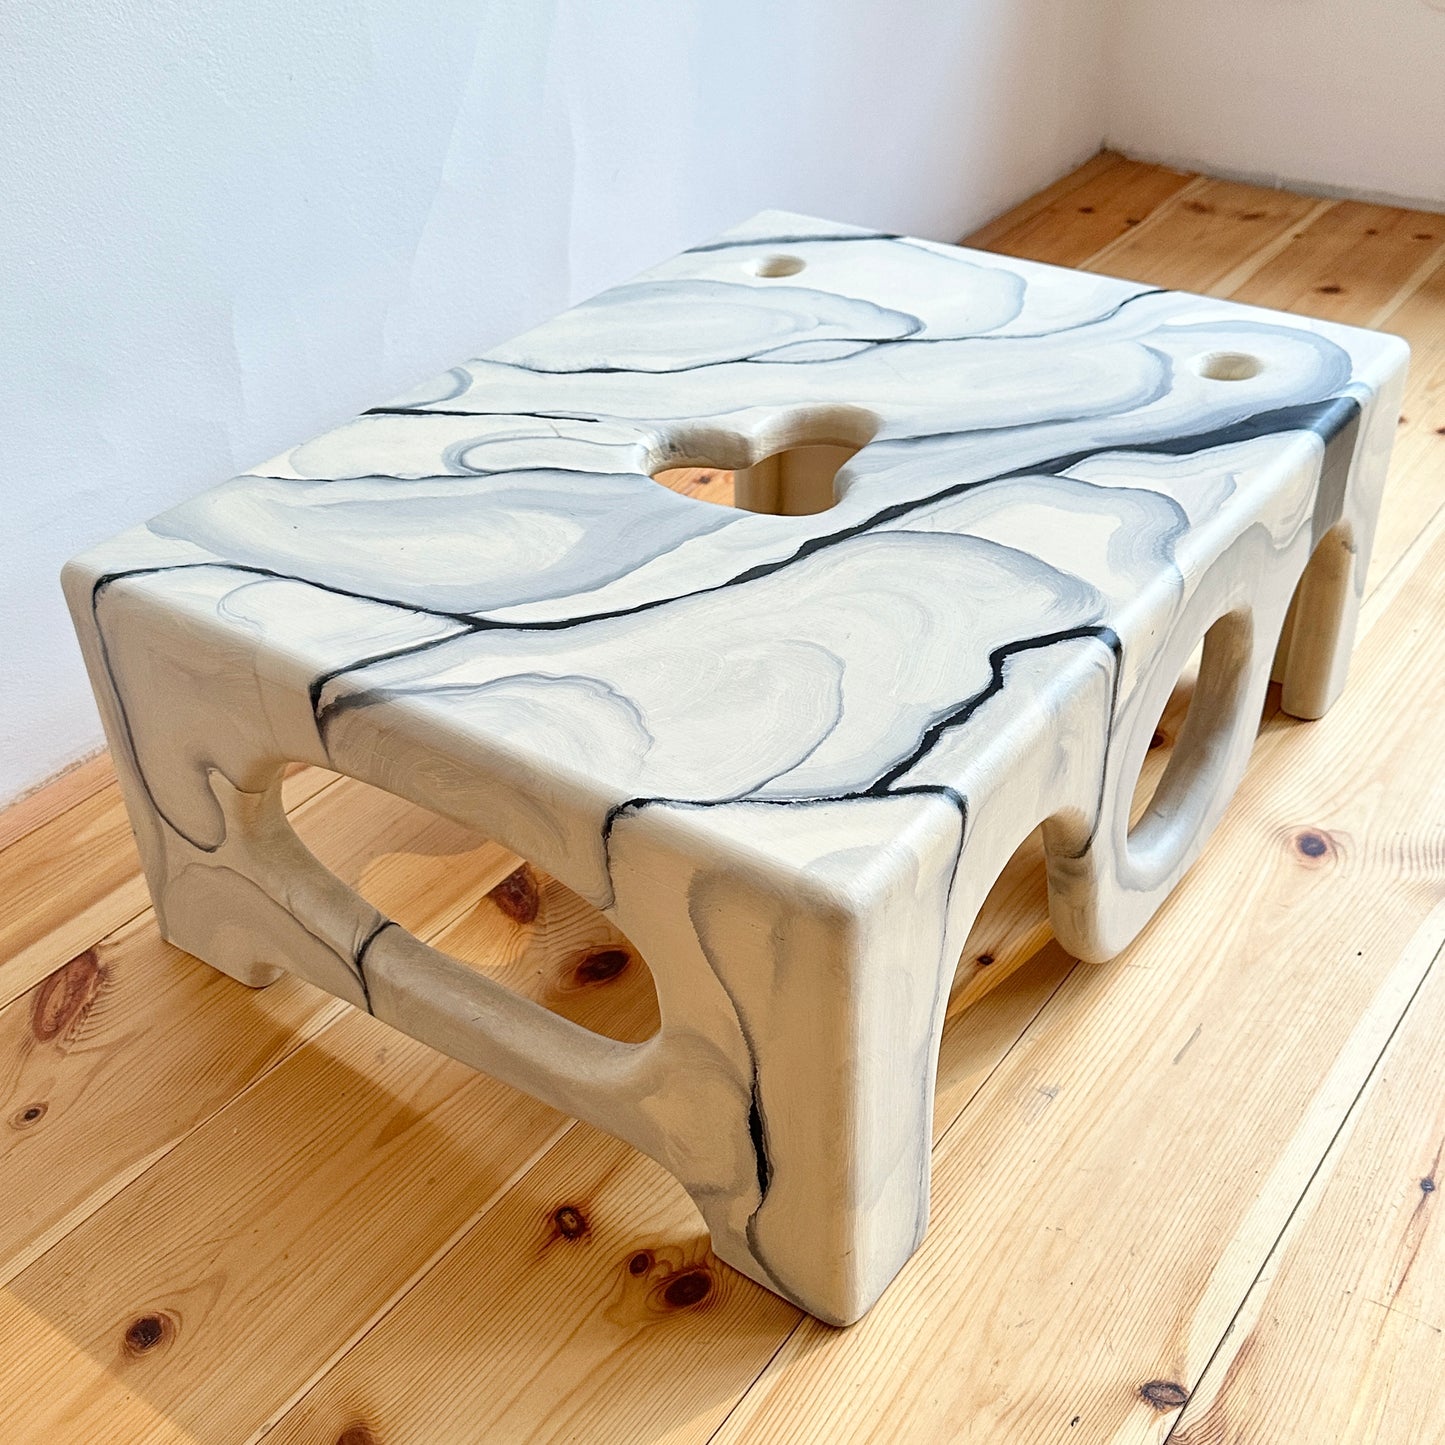 Coffee table by Henrik Ødegaard